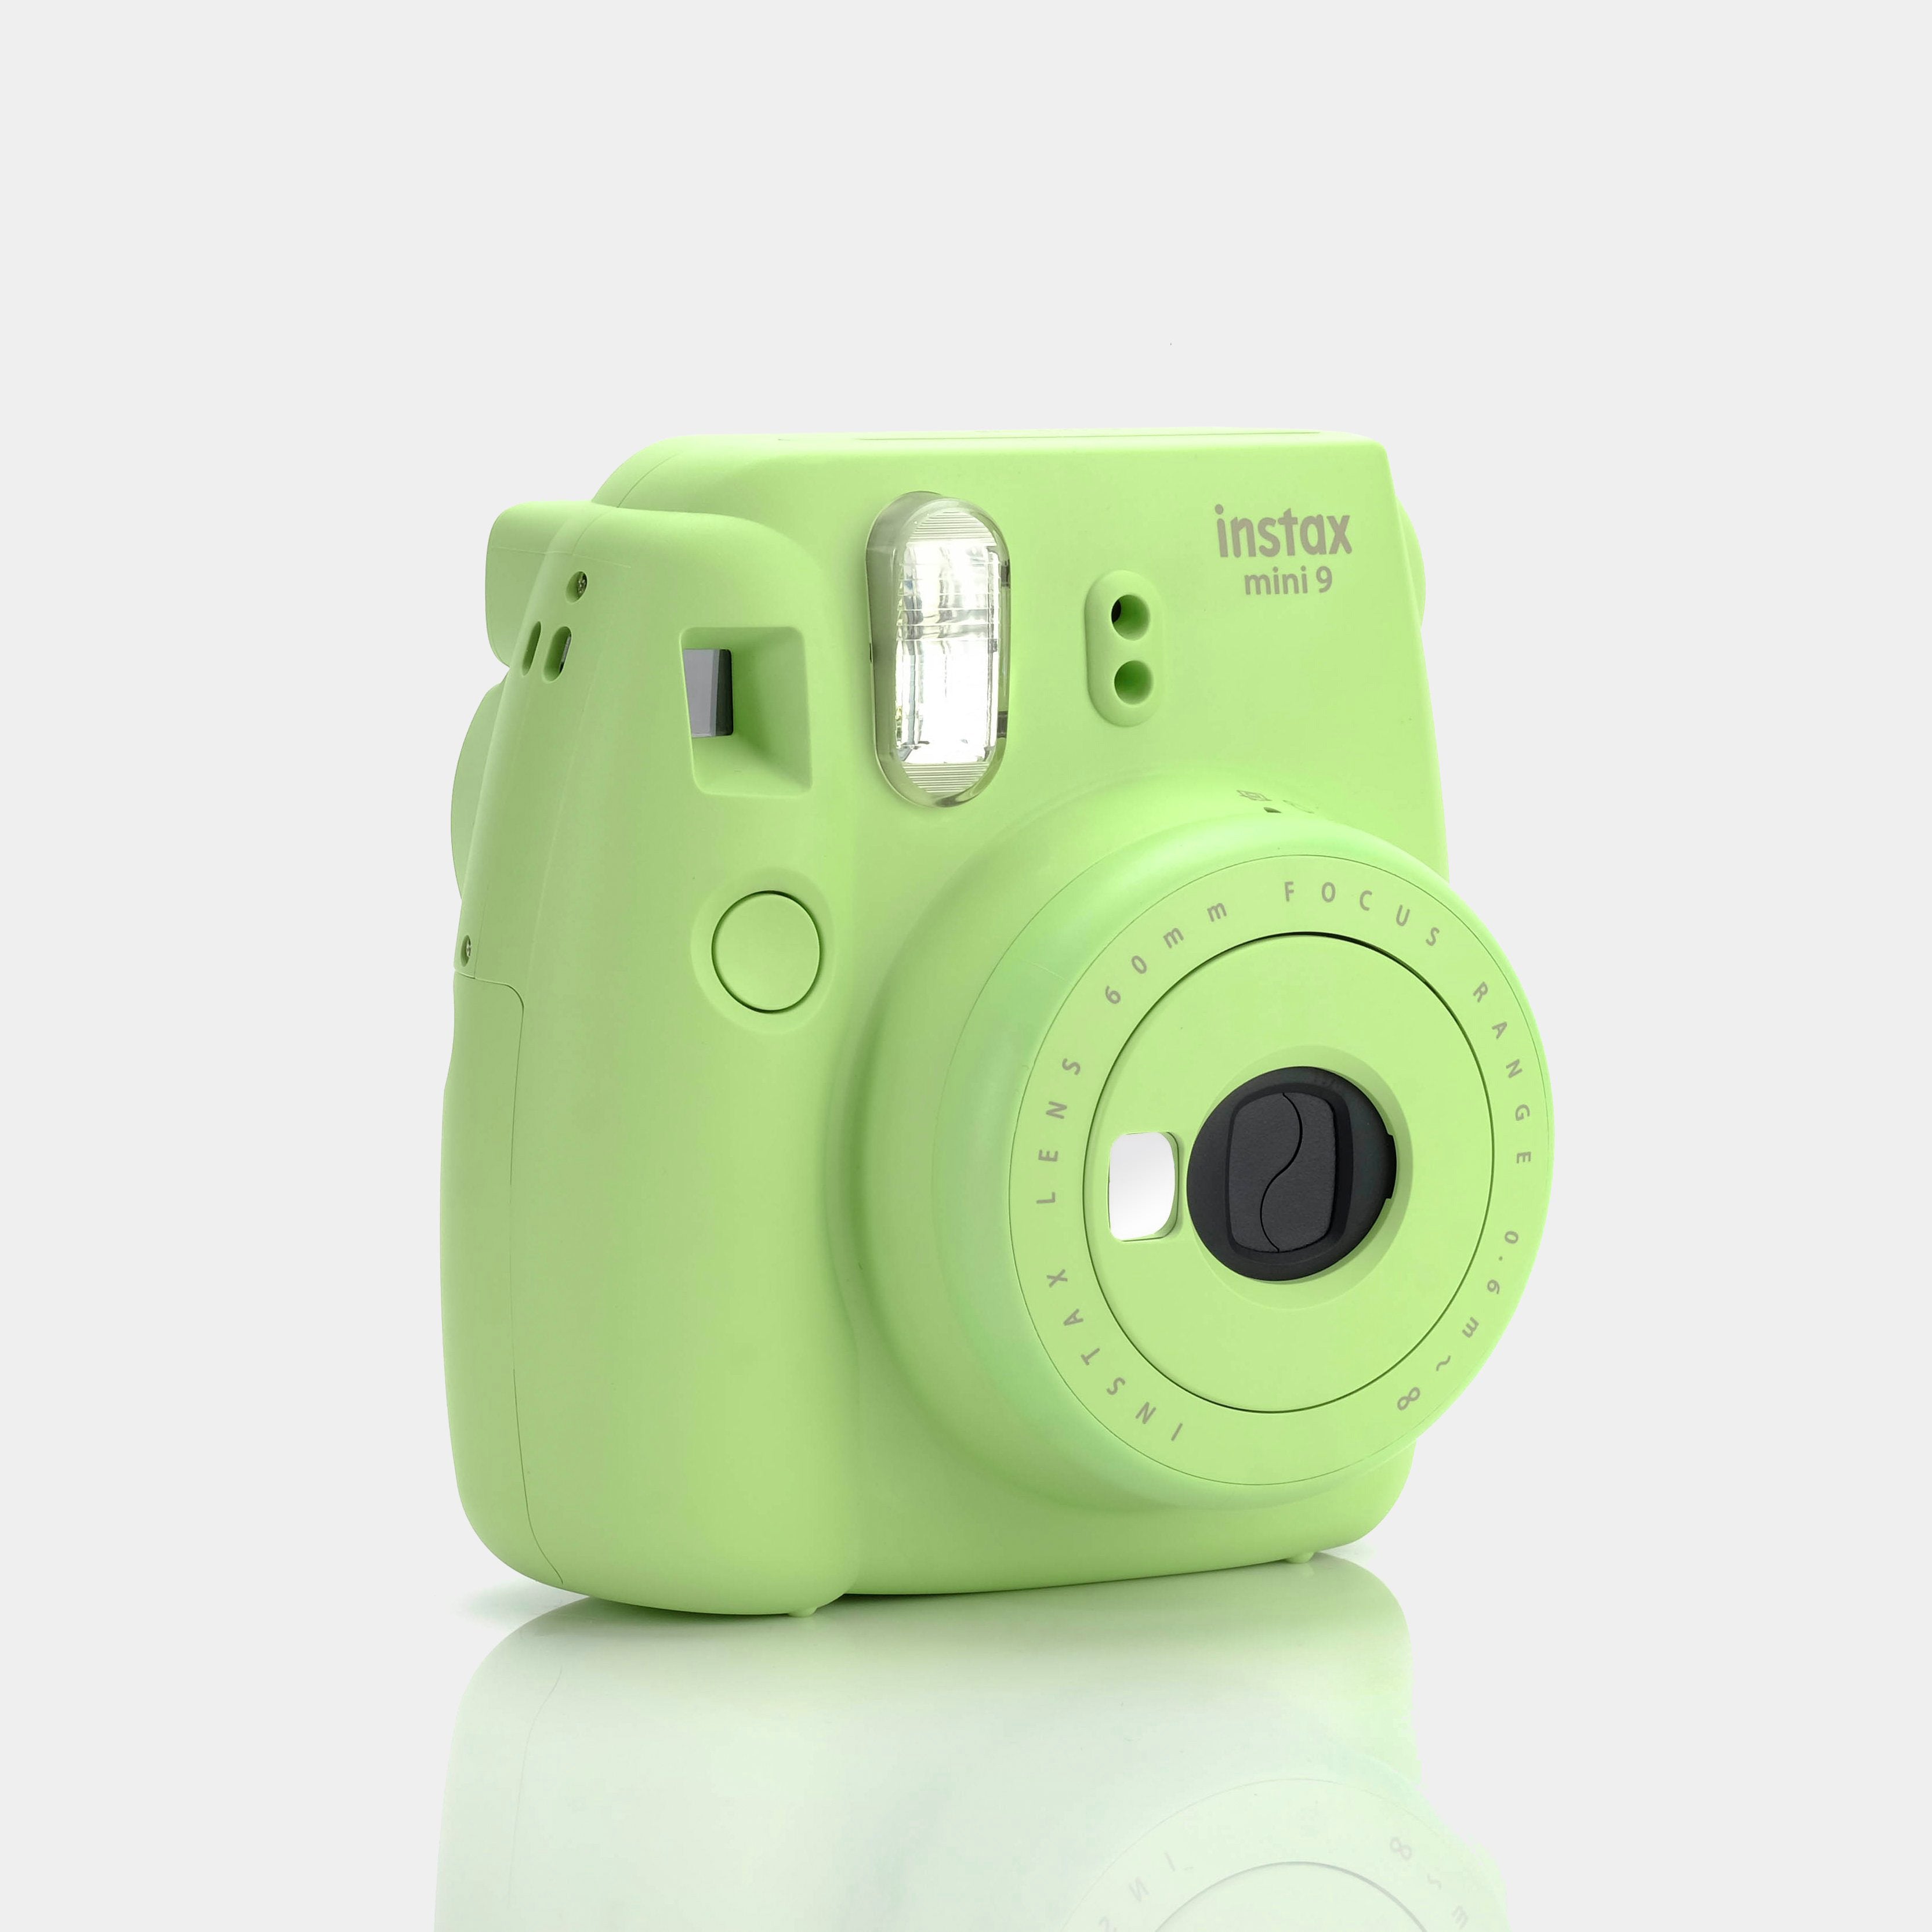 Fujifilm Instax Mini 9 Lime Green Instant Film Camera - Refurbished